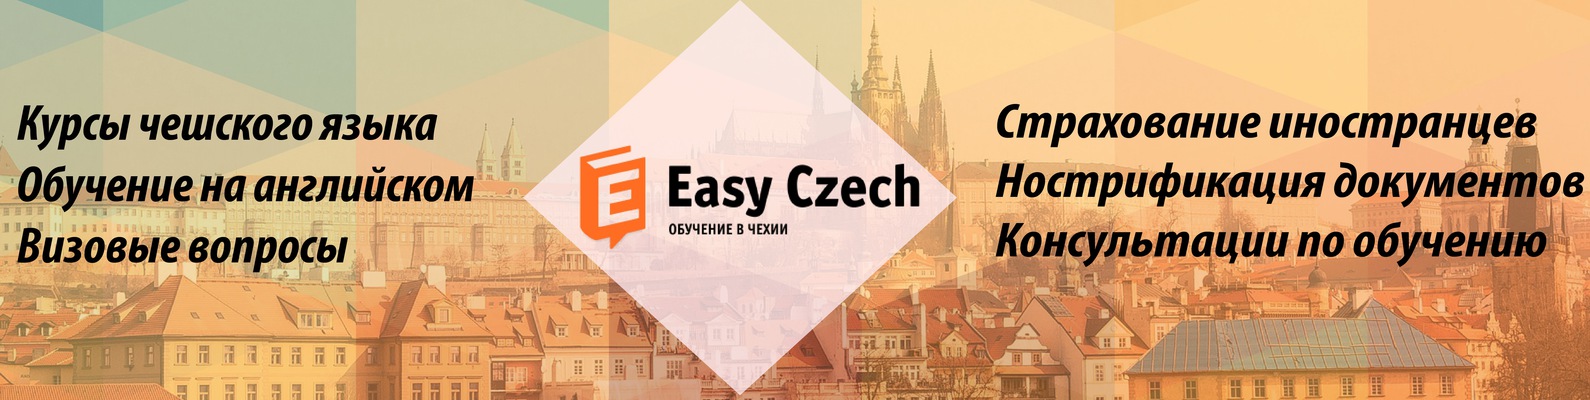 Изучение английского и чешского языка на годовых курсах в праге